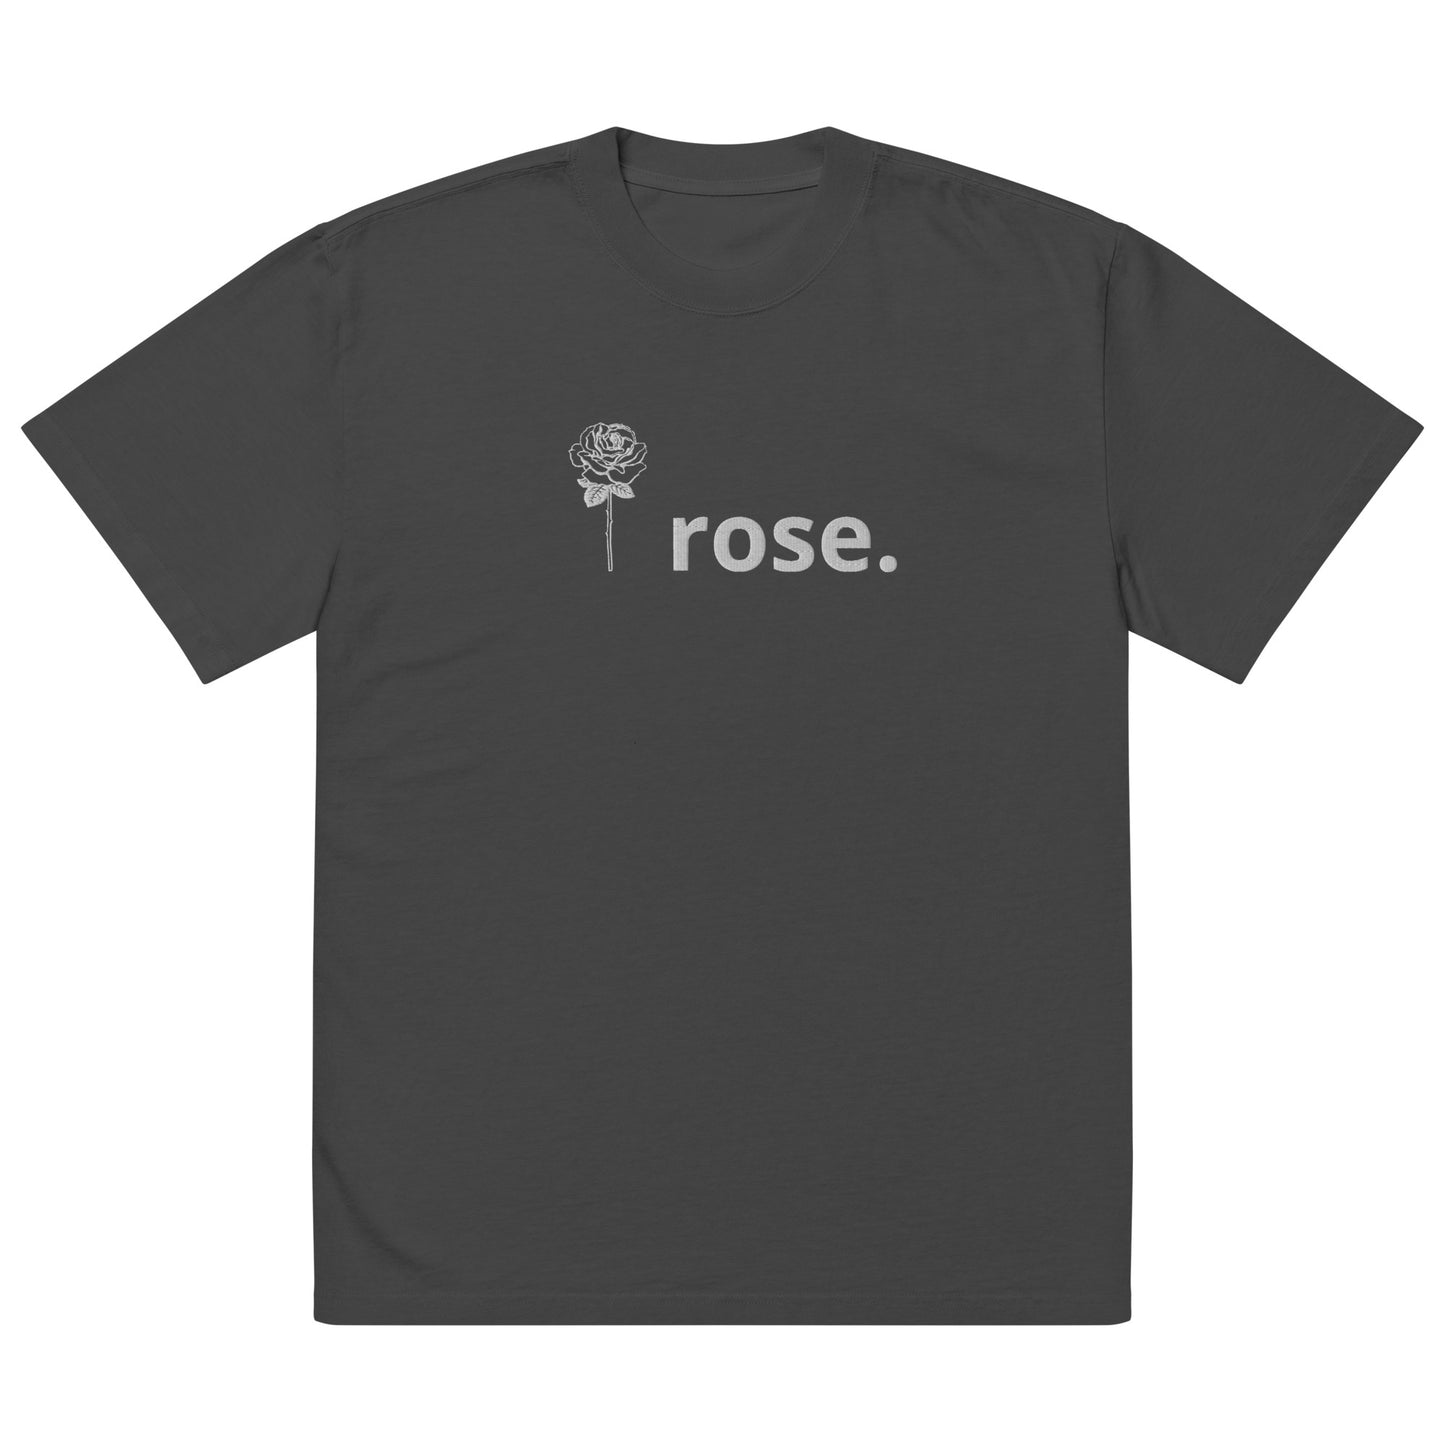 I Rose. Oversized faded t-shirt